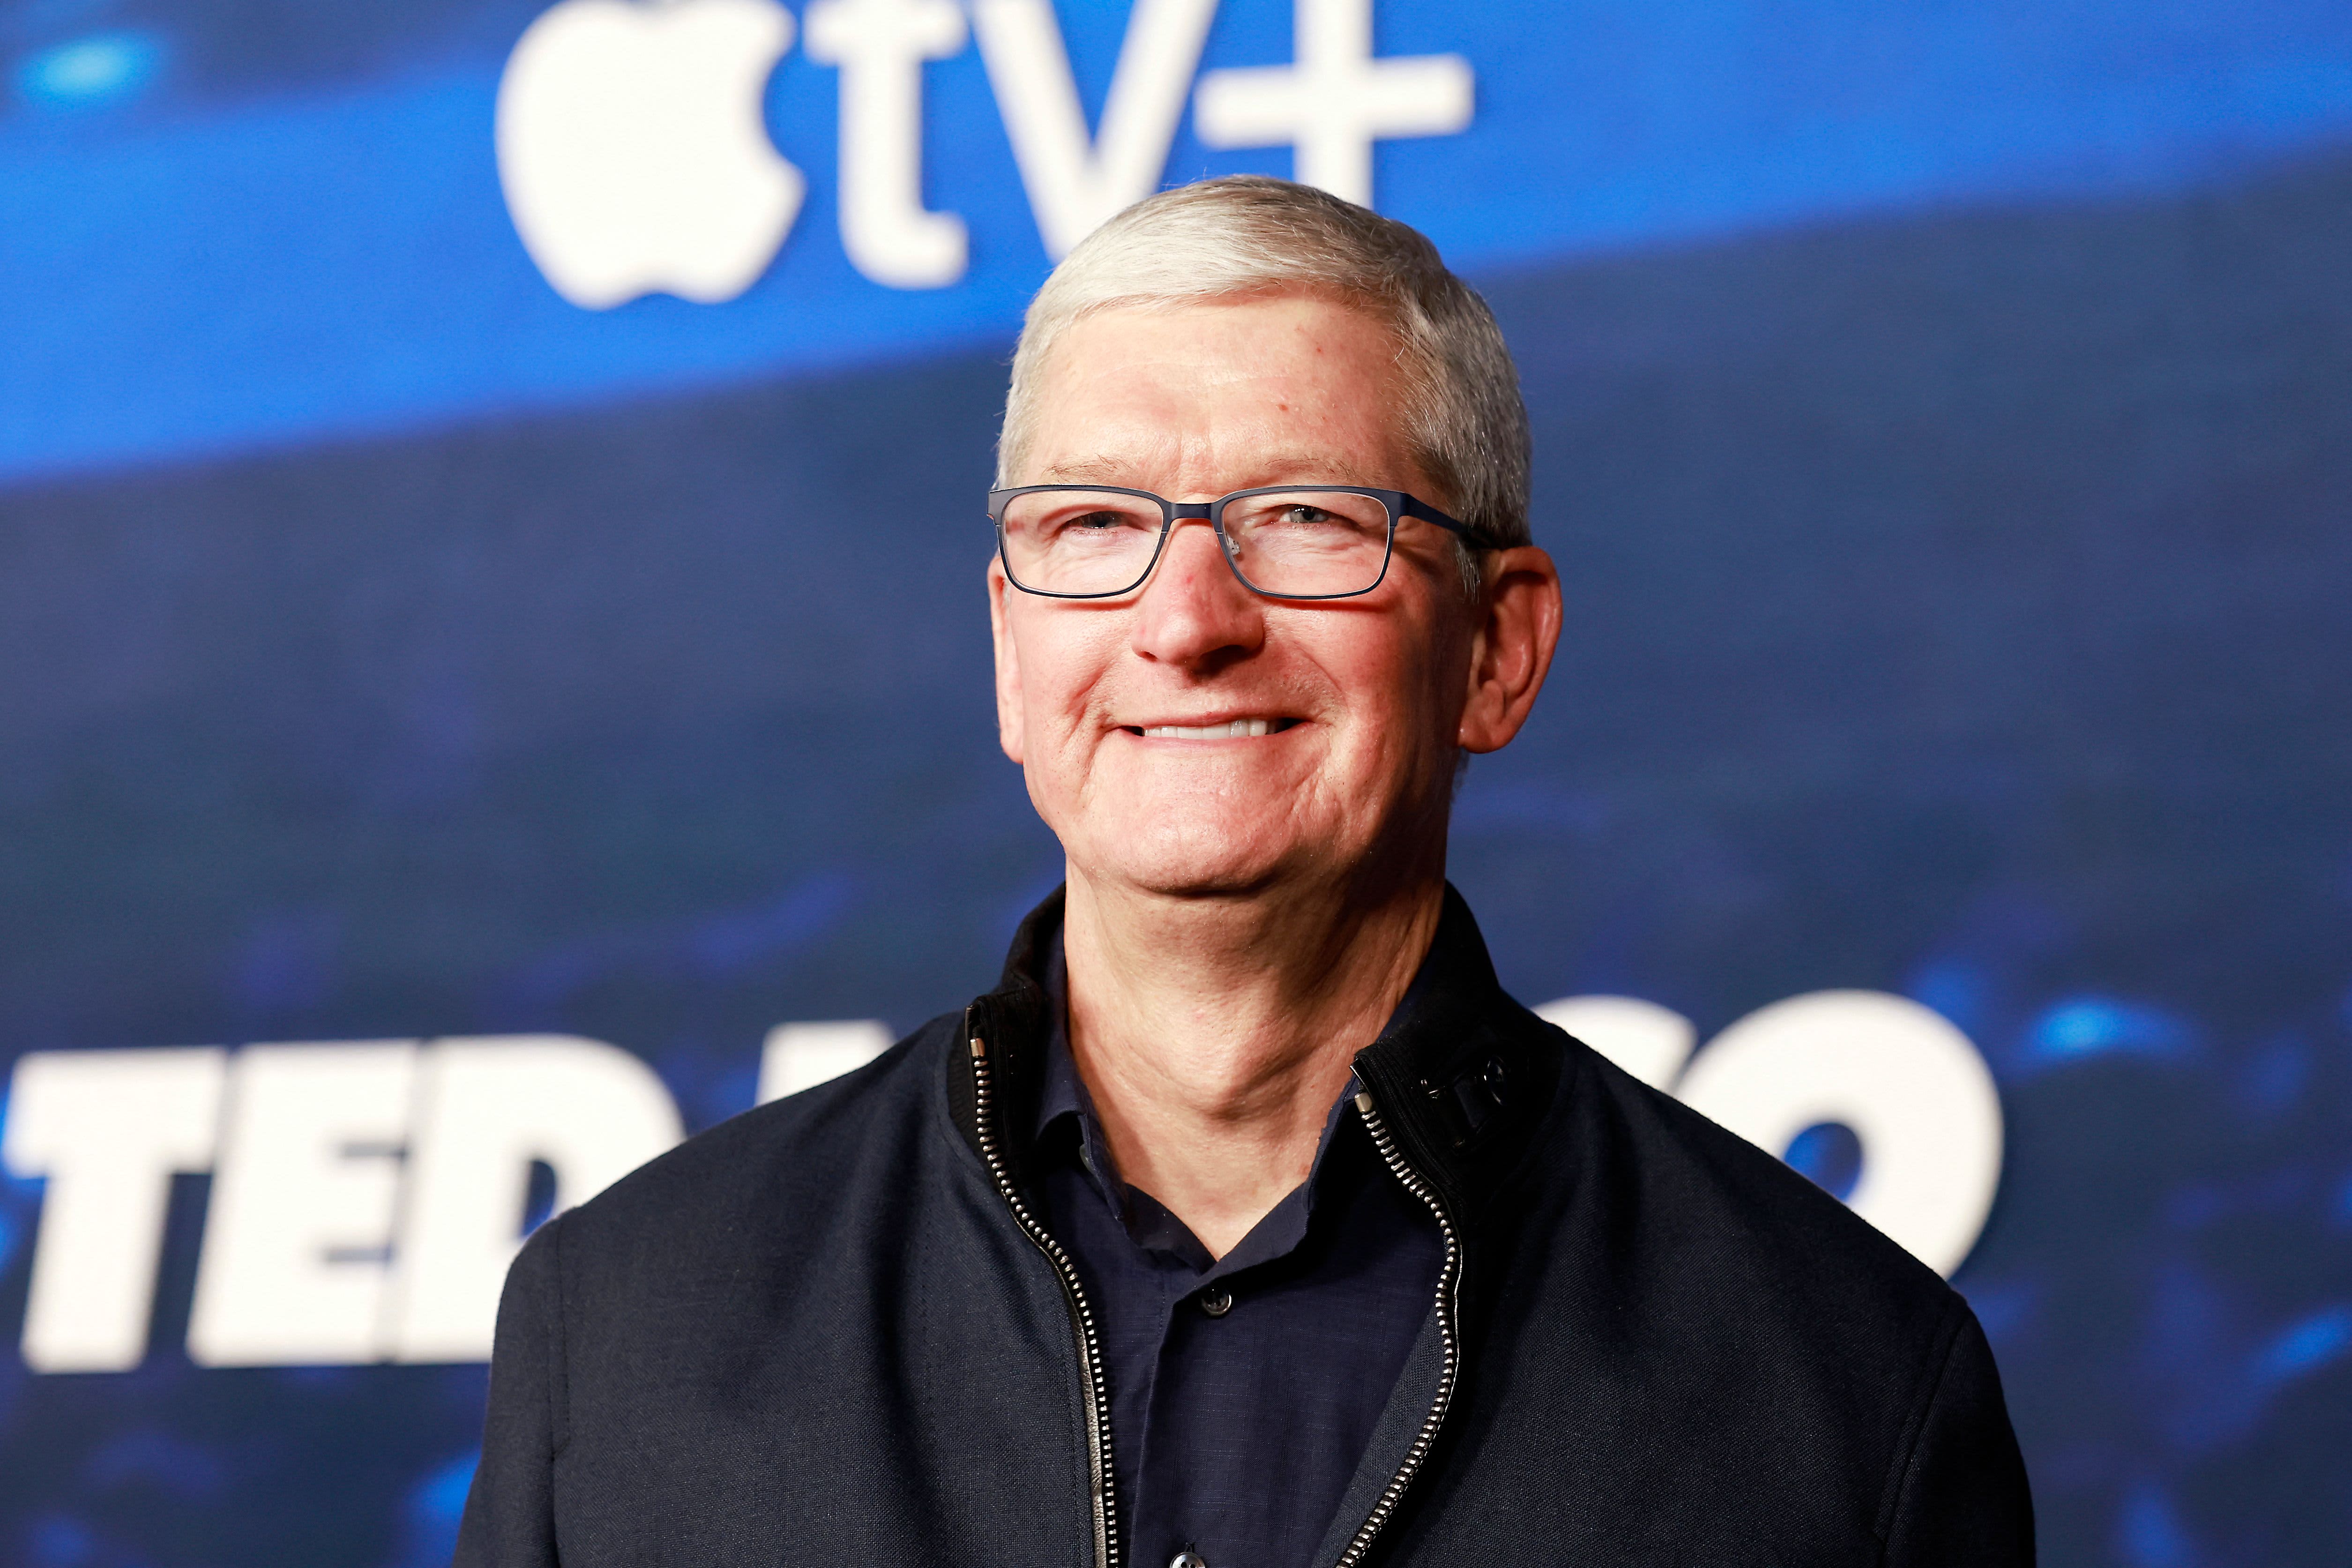 Warum Apple CEO Tim Cook sagt, er nehme Kritik nie persönlich